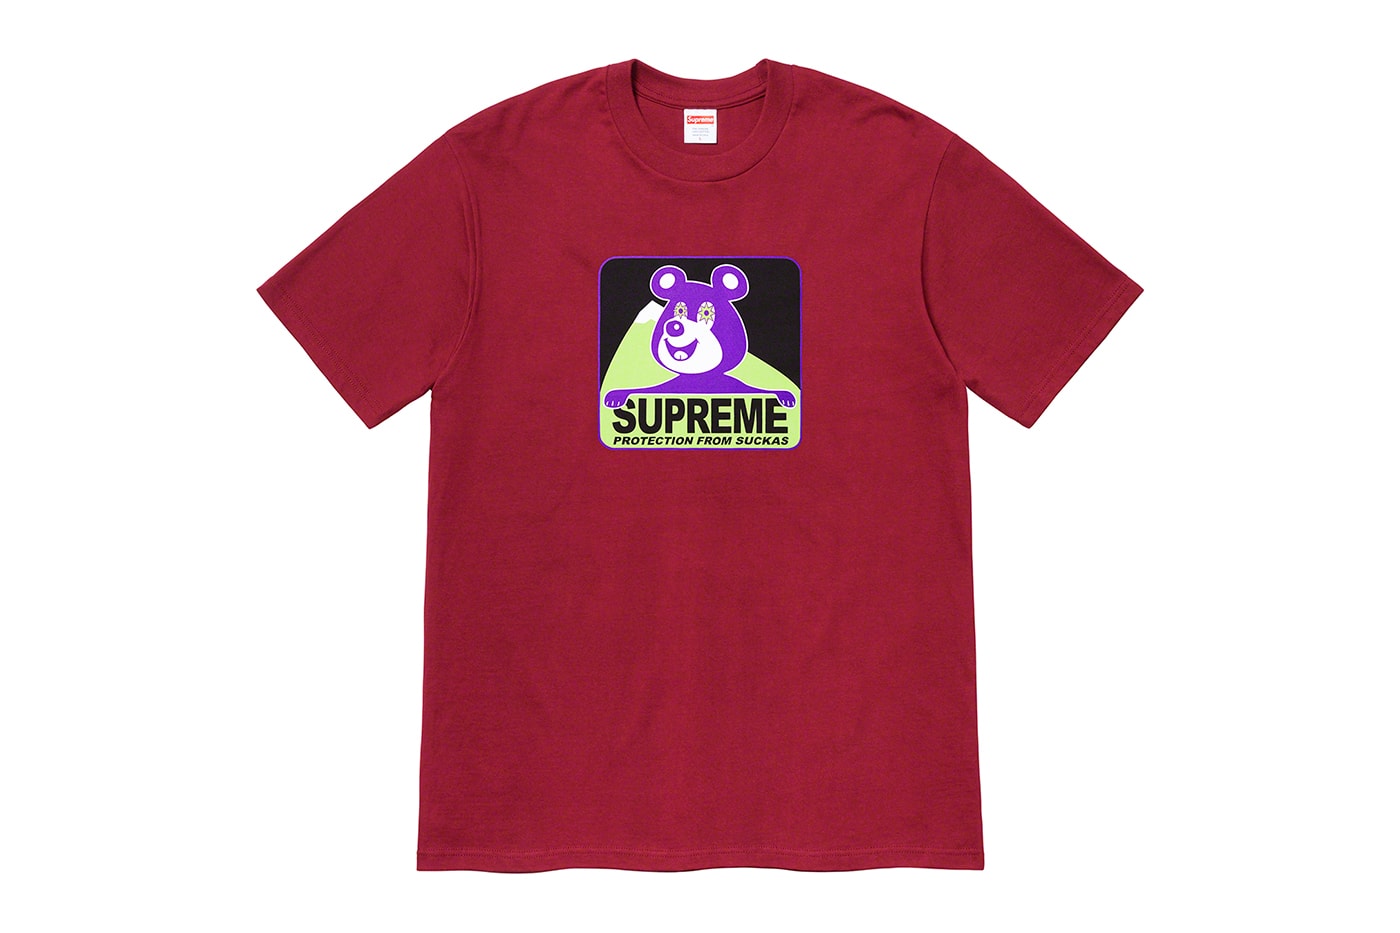 Supreme 2020 冬季 T-shirt 系列正式發佈